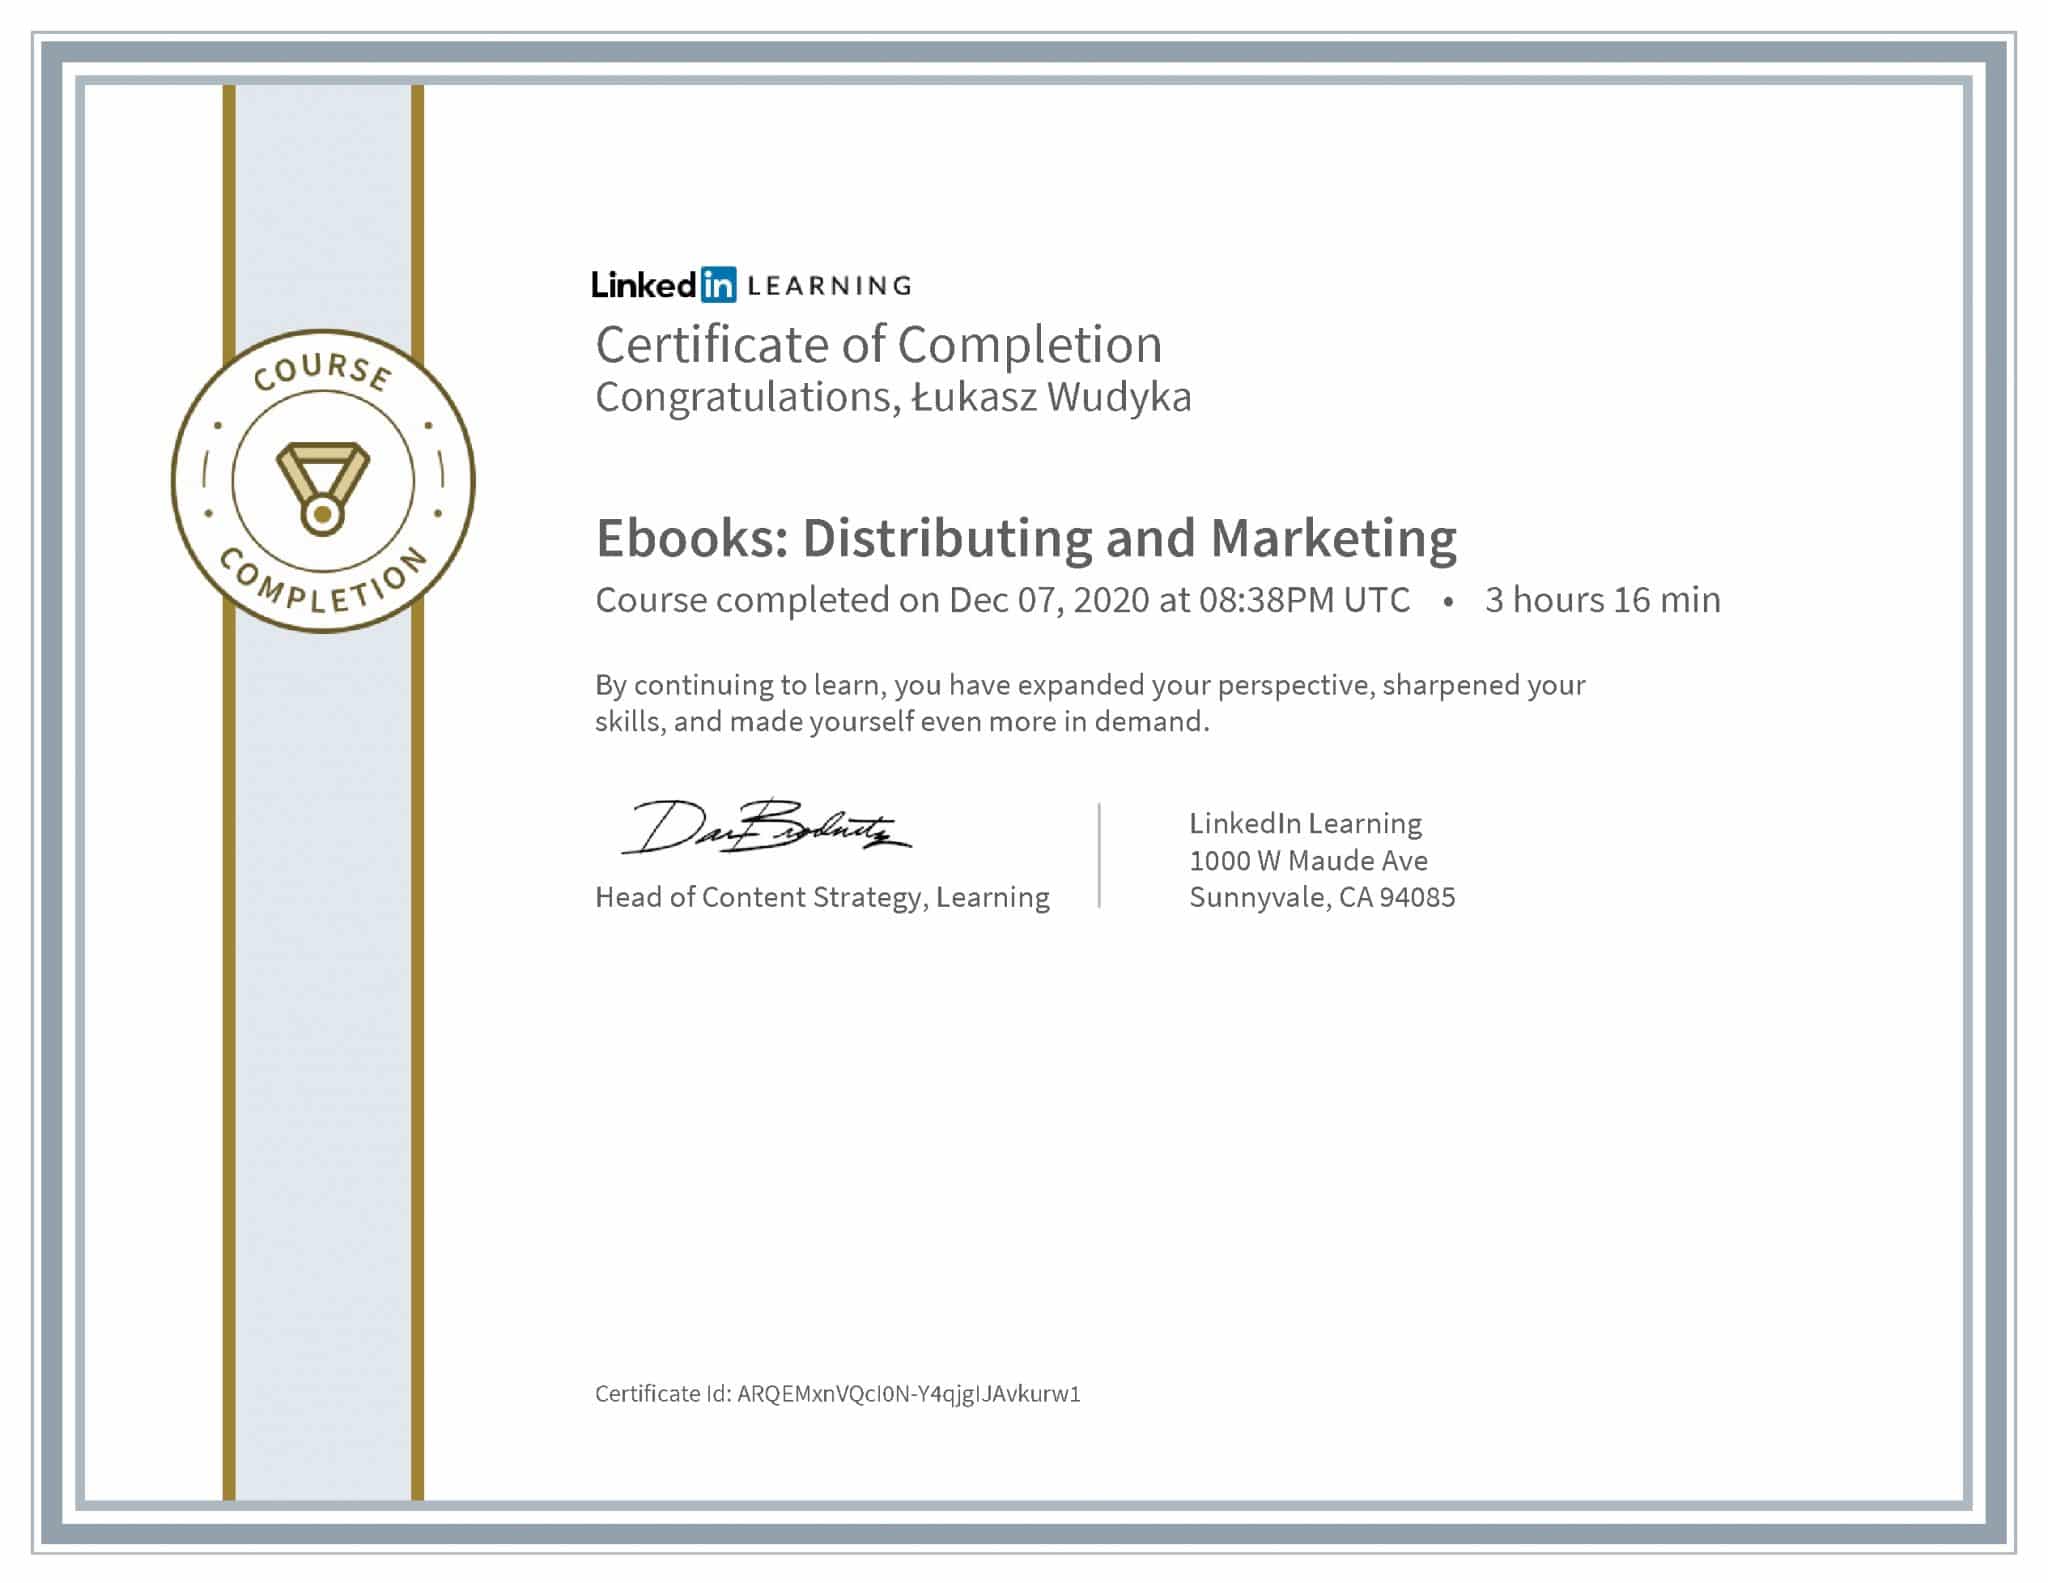 Łukasz Wudyka certyfikat LinkedIn Ebooks: Distributing and Marketing